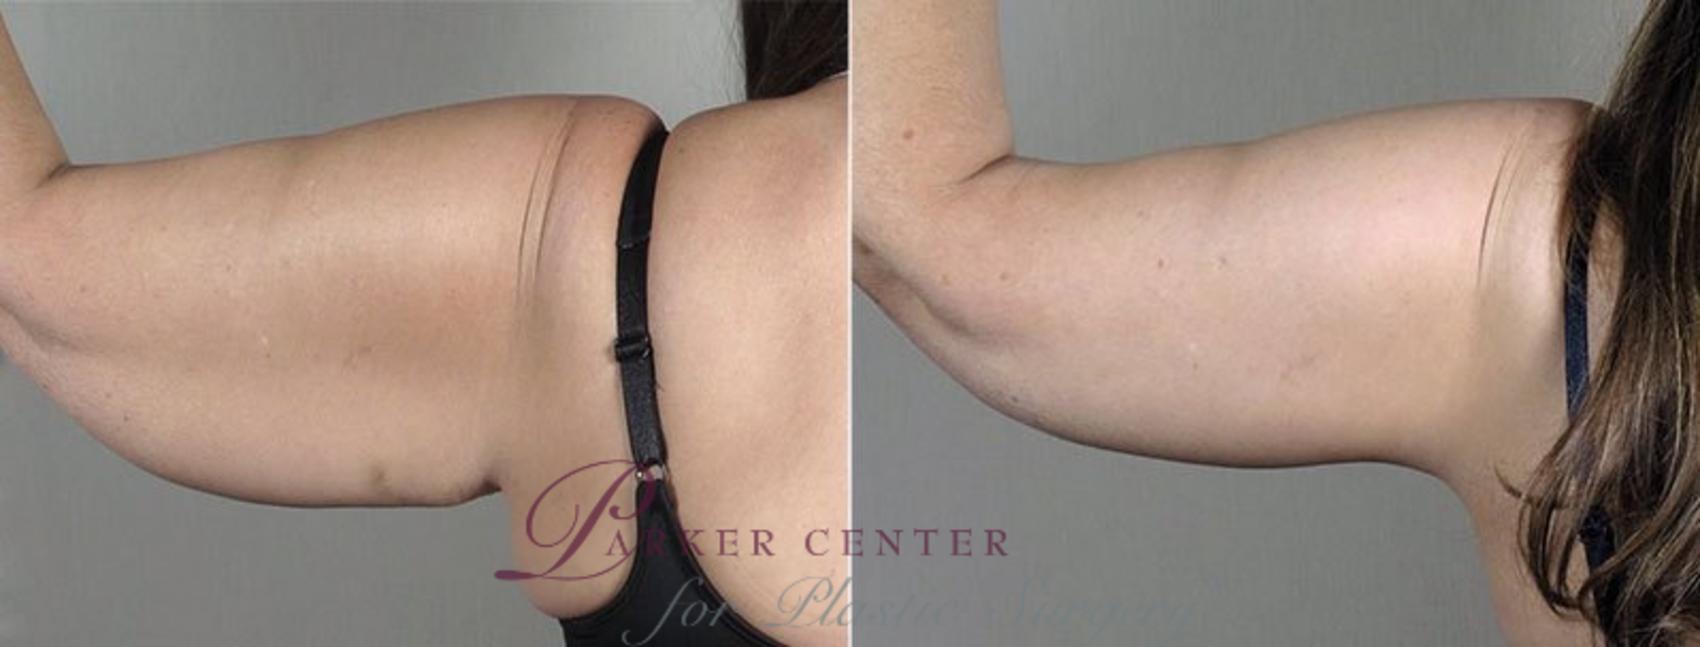 Upper Arm Rejuvenation Case 832 Before & After View #3 | Paramus, NJ | Parker Center for Plastic Surgery